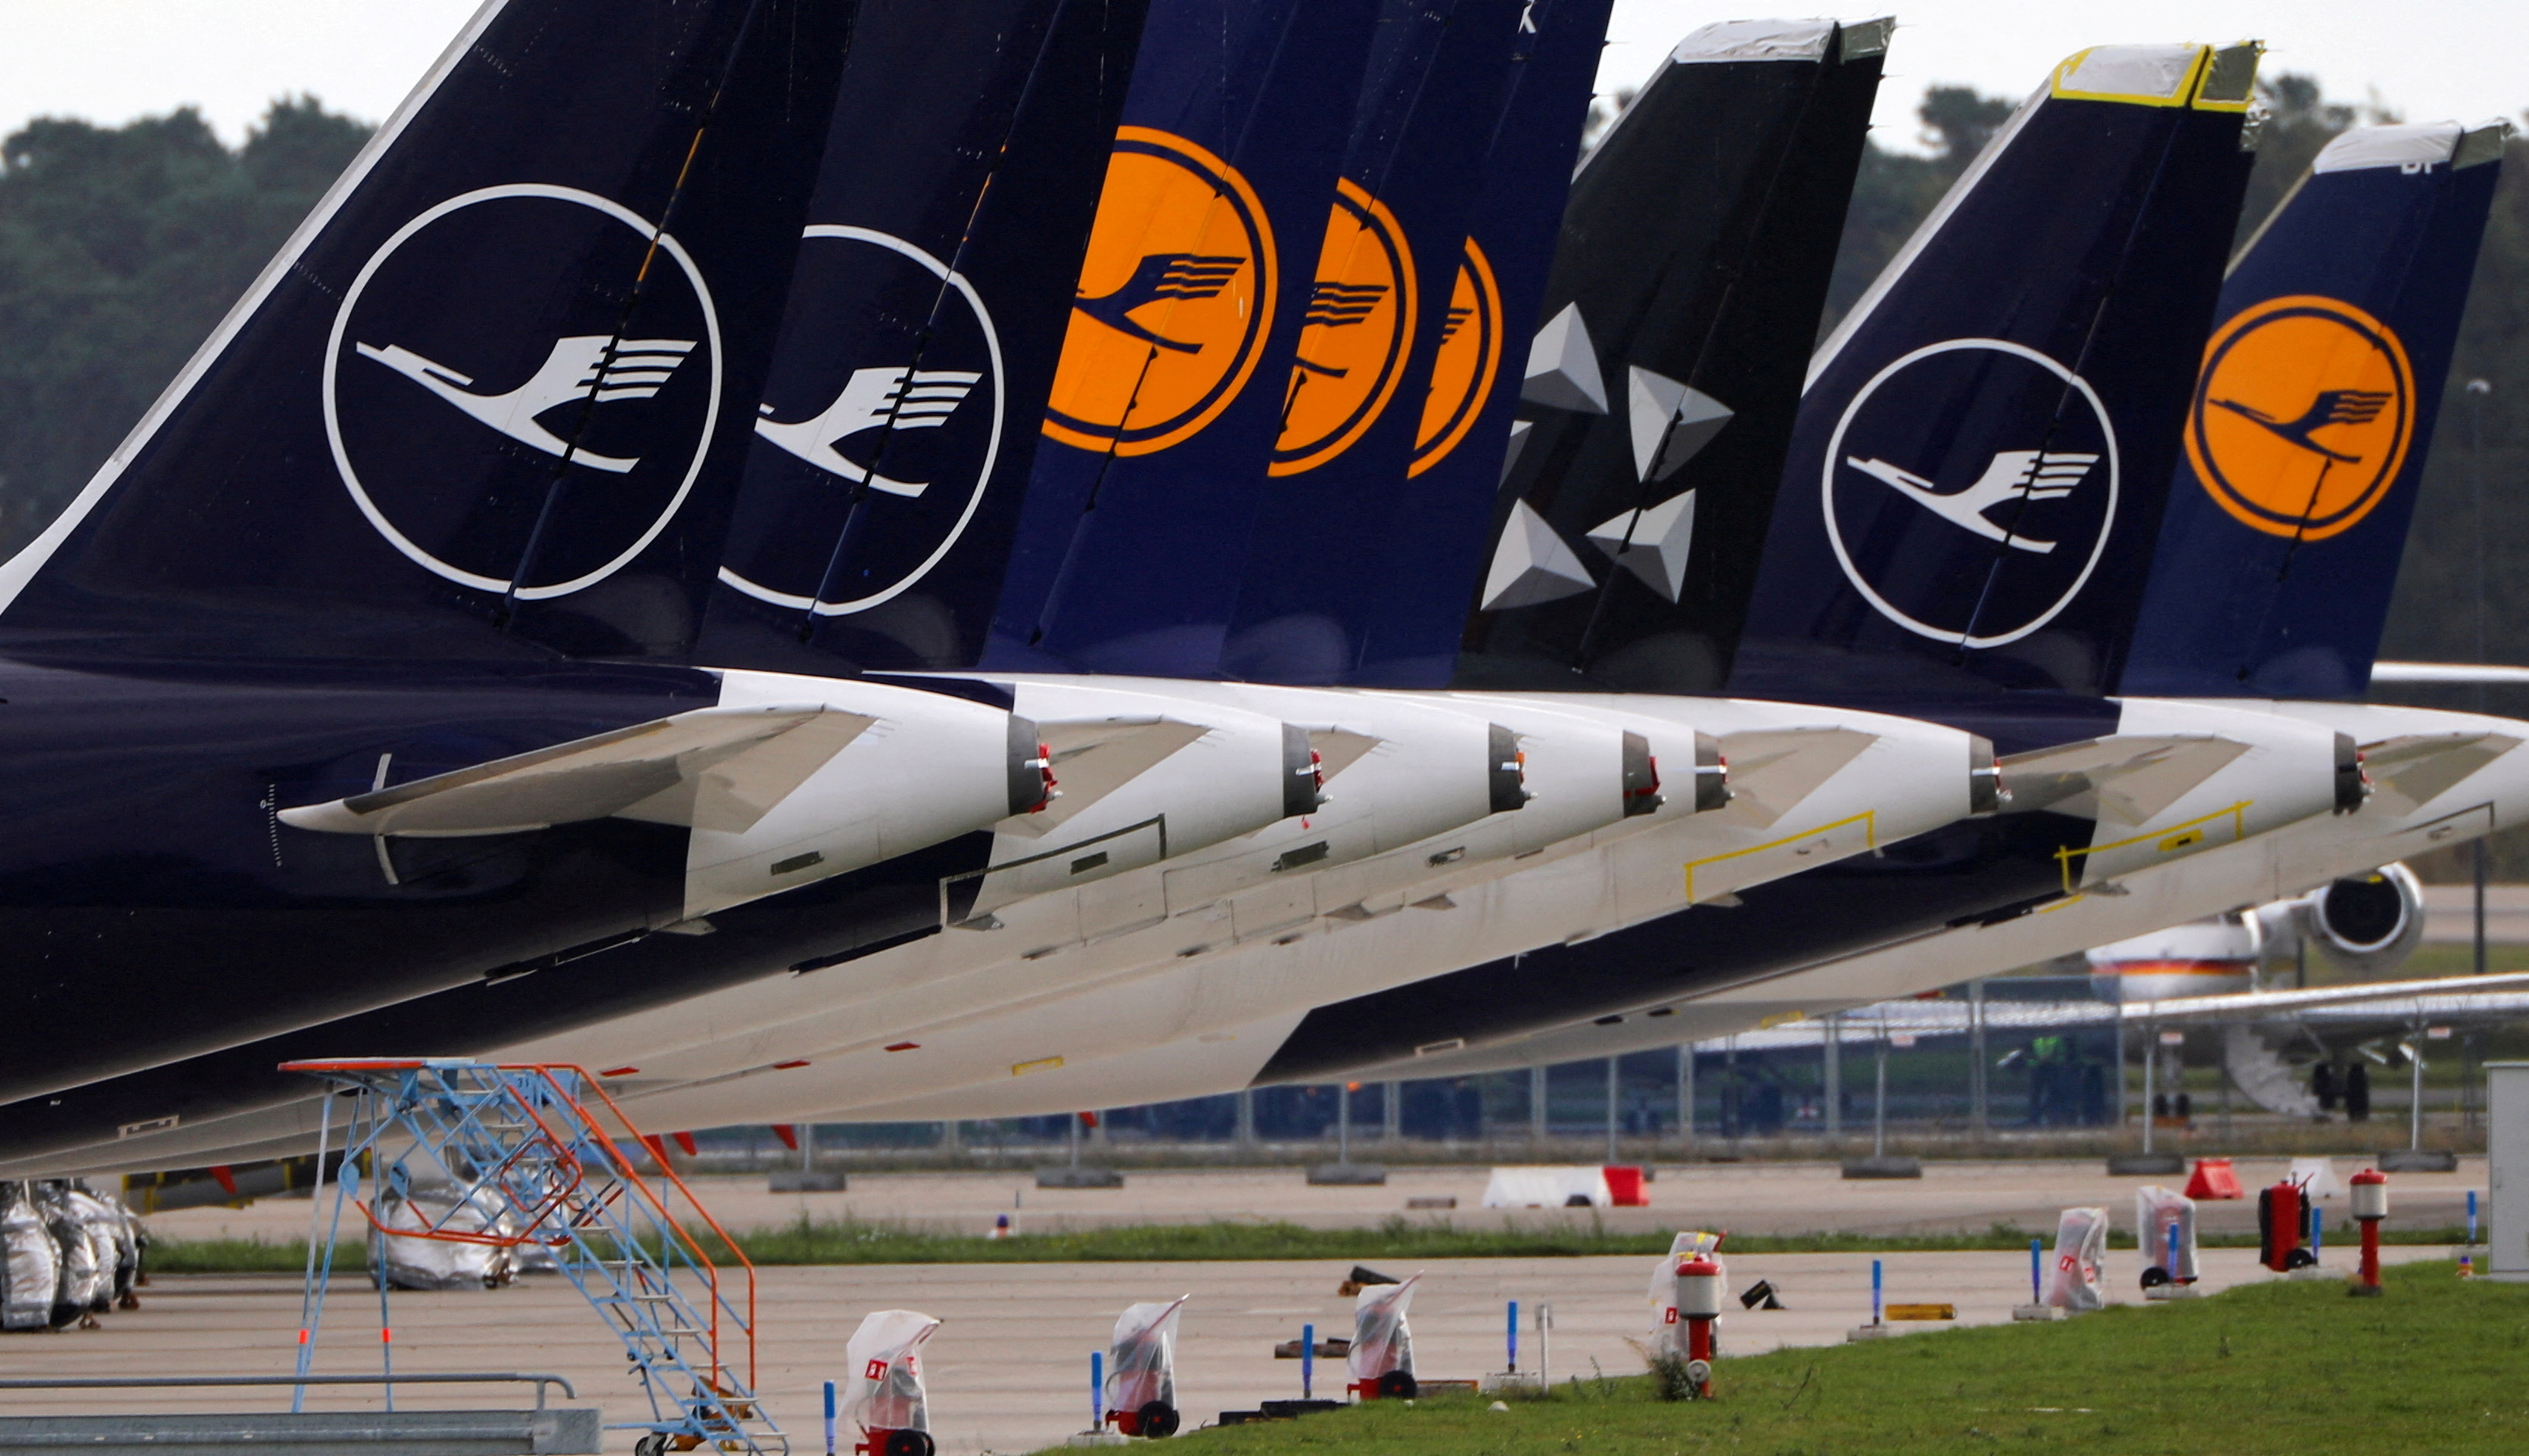 Grève dans l'aérien : Lufthansa prévoit des annulations et retards mercredi